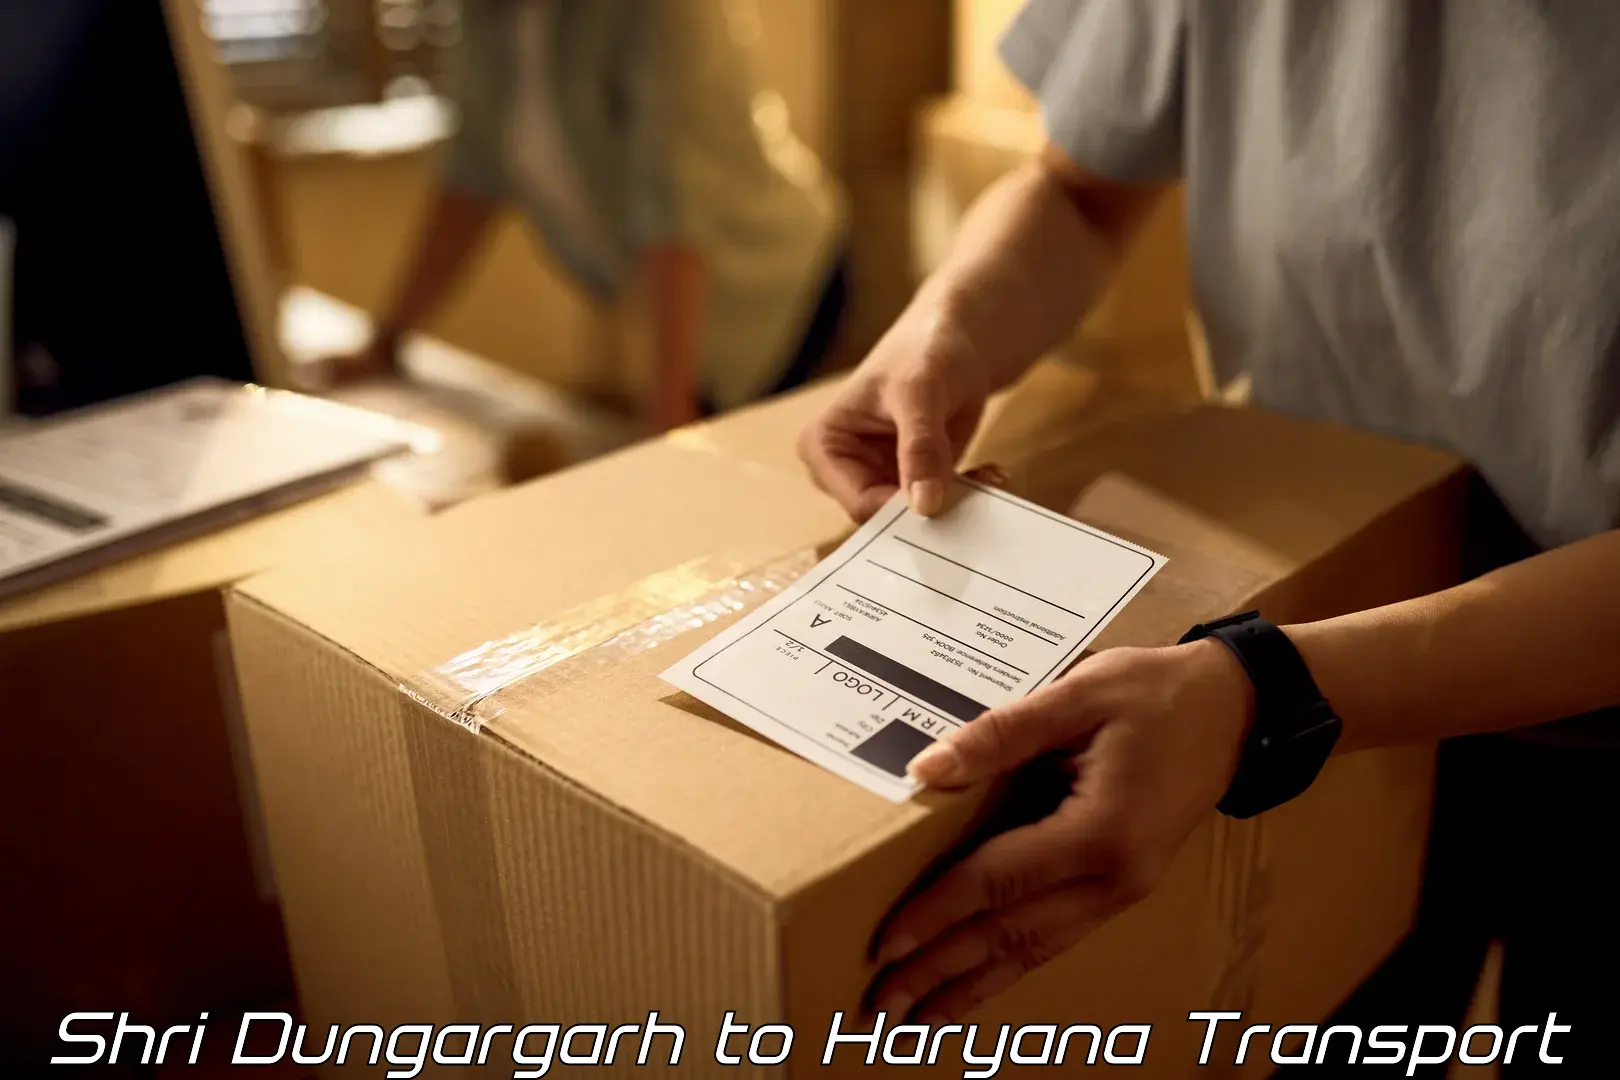 Lorry transport service Shri Dungargarh to Dharuhera